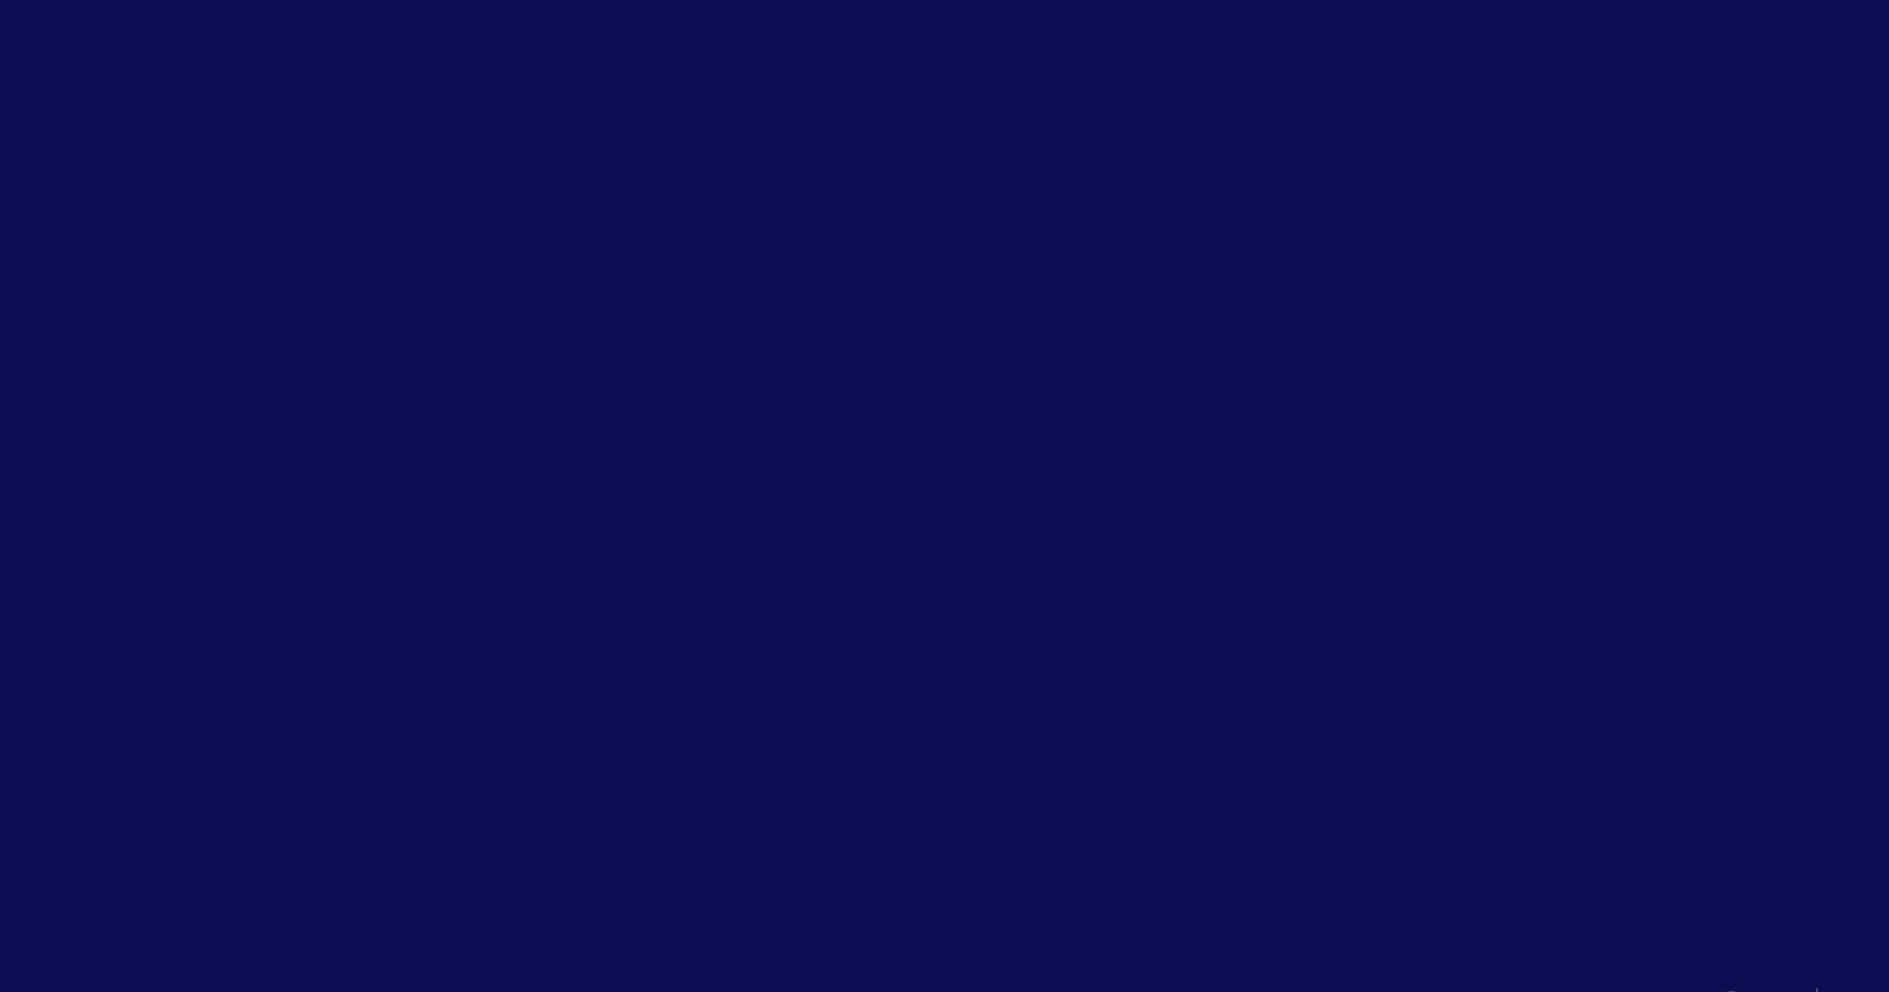 Enjämnmörkblå Bakgrundsfärg.